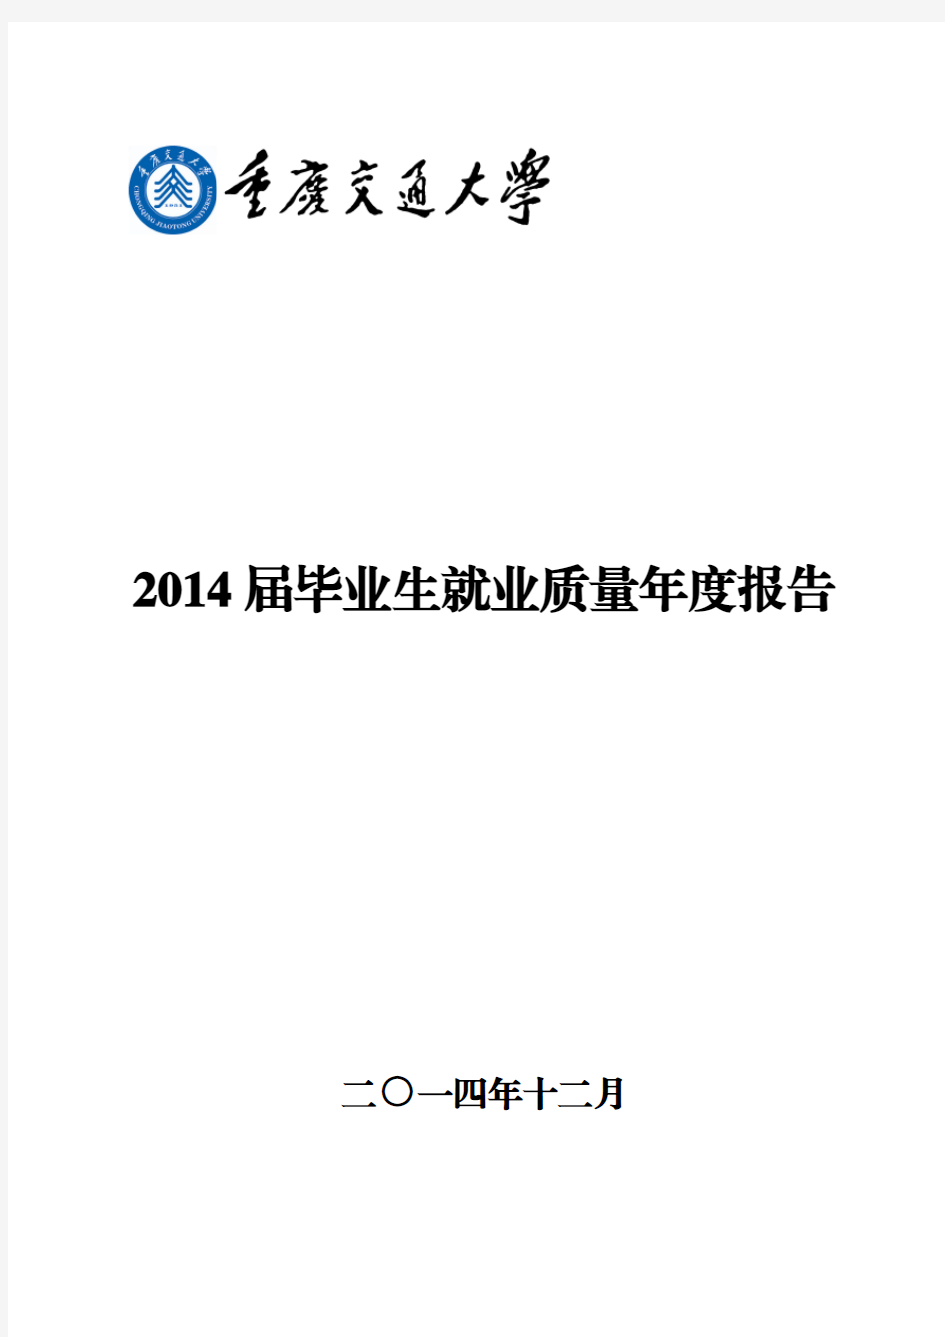 重庆交通大学2014届毕业生就业质量年度报告